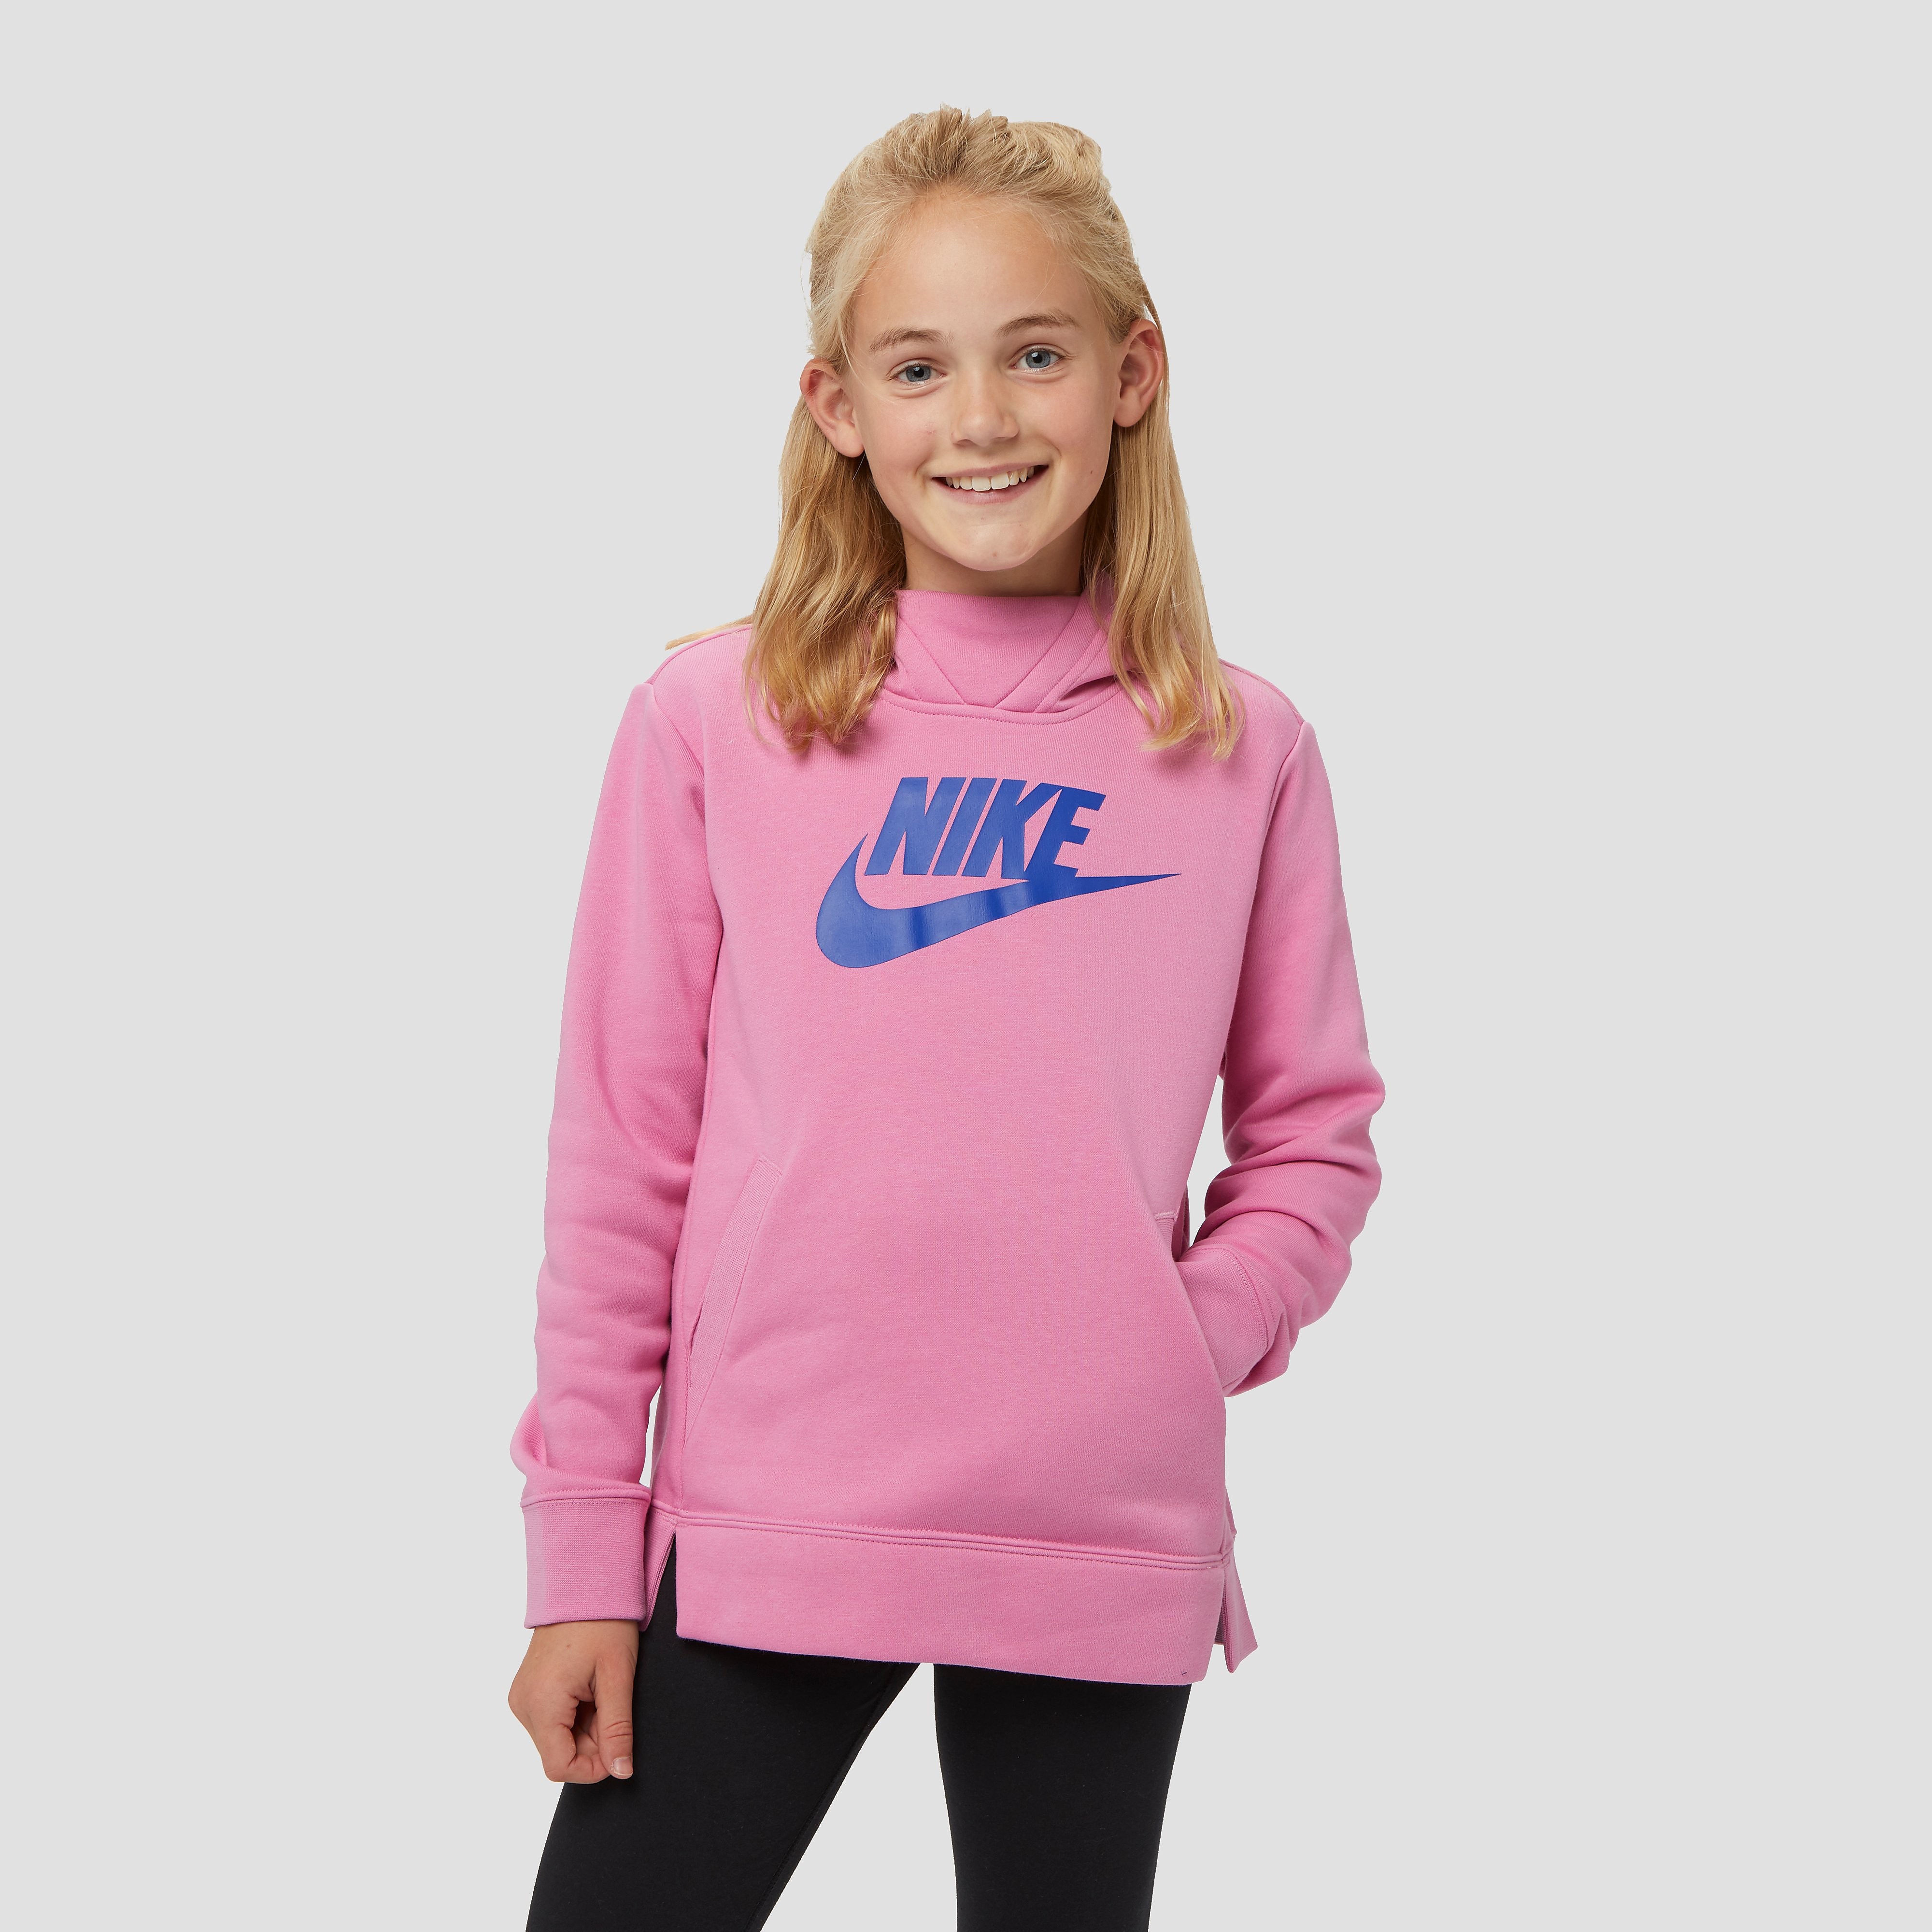 NIKE Sportswear trui roze kinderen Kinderen